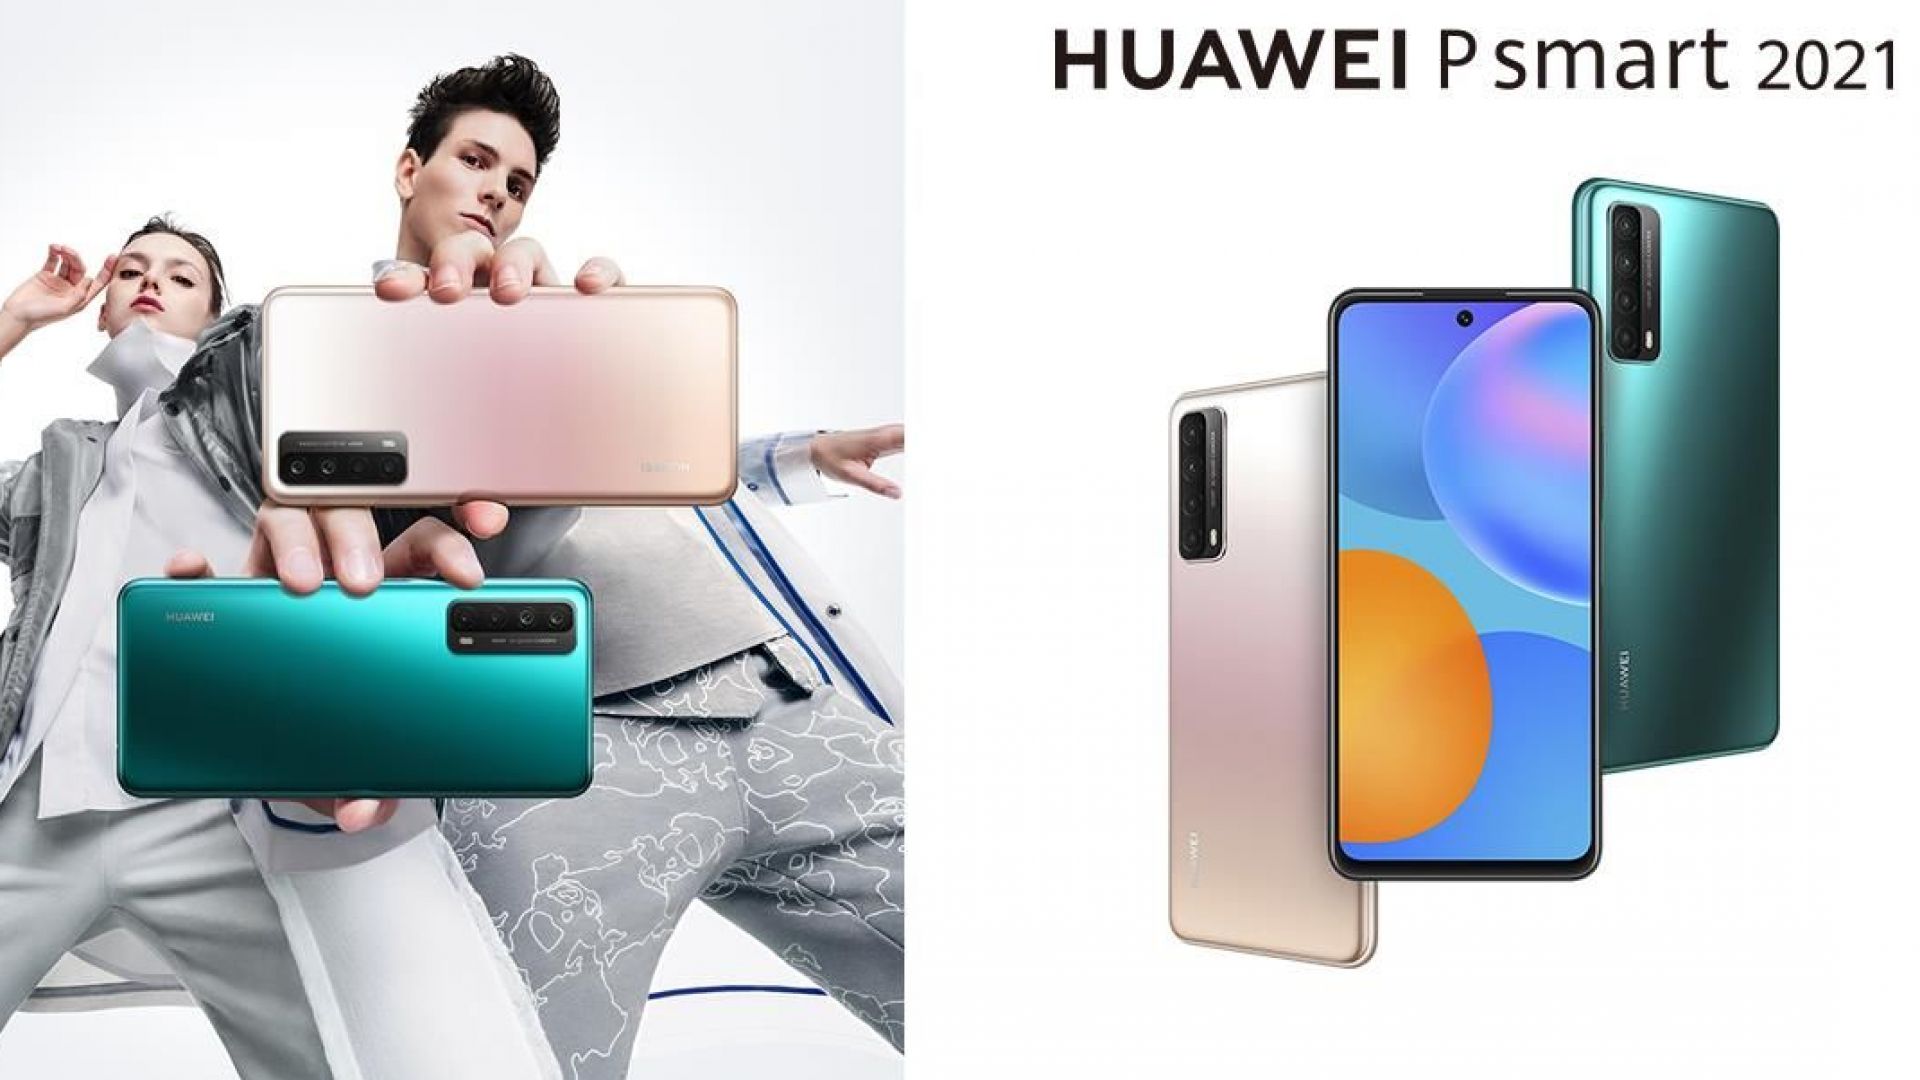 HUAWEI P smart 2021 влиза на българския пазар с четворна камера, стилен дизайн и 5000mAh батерия